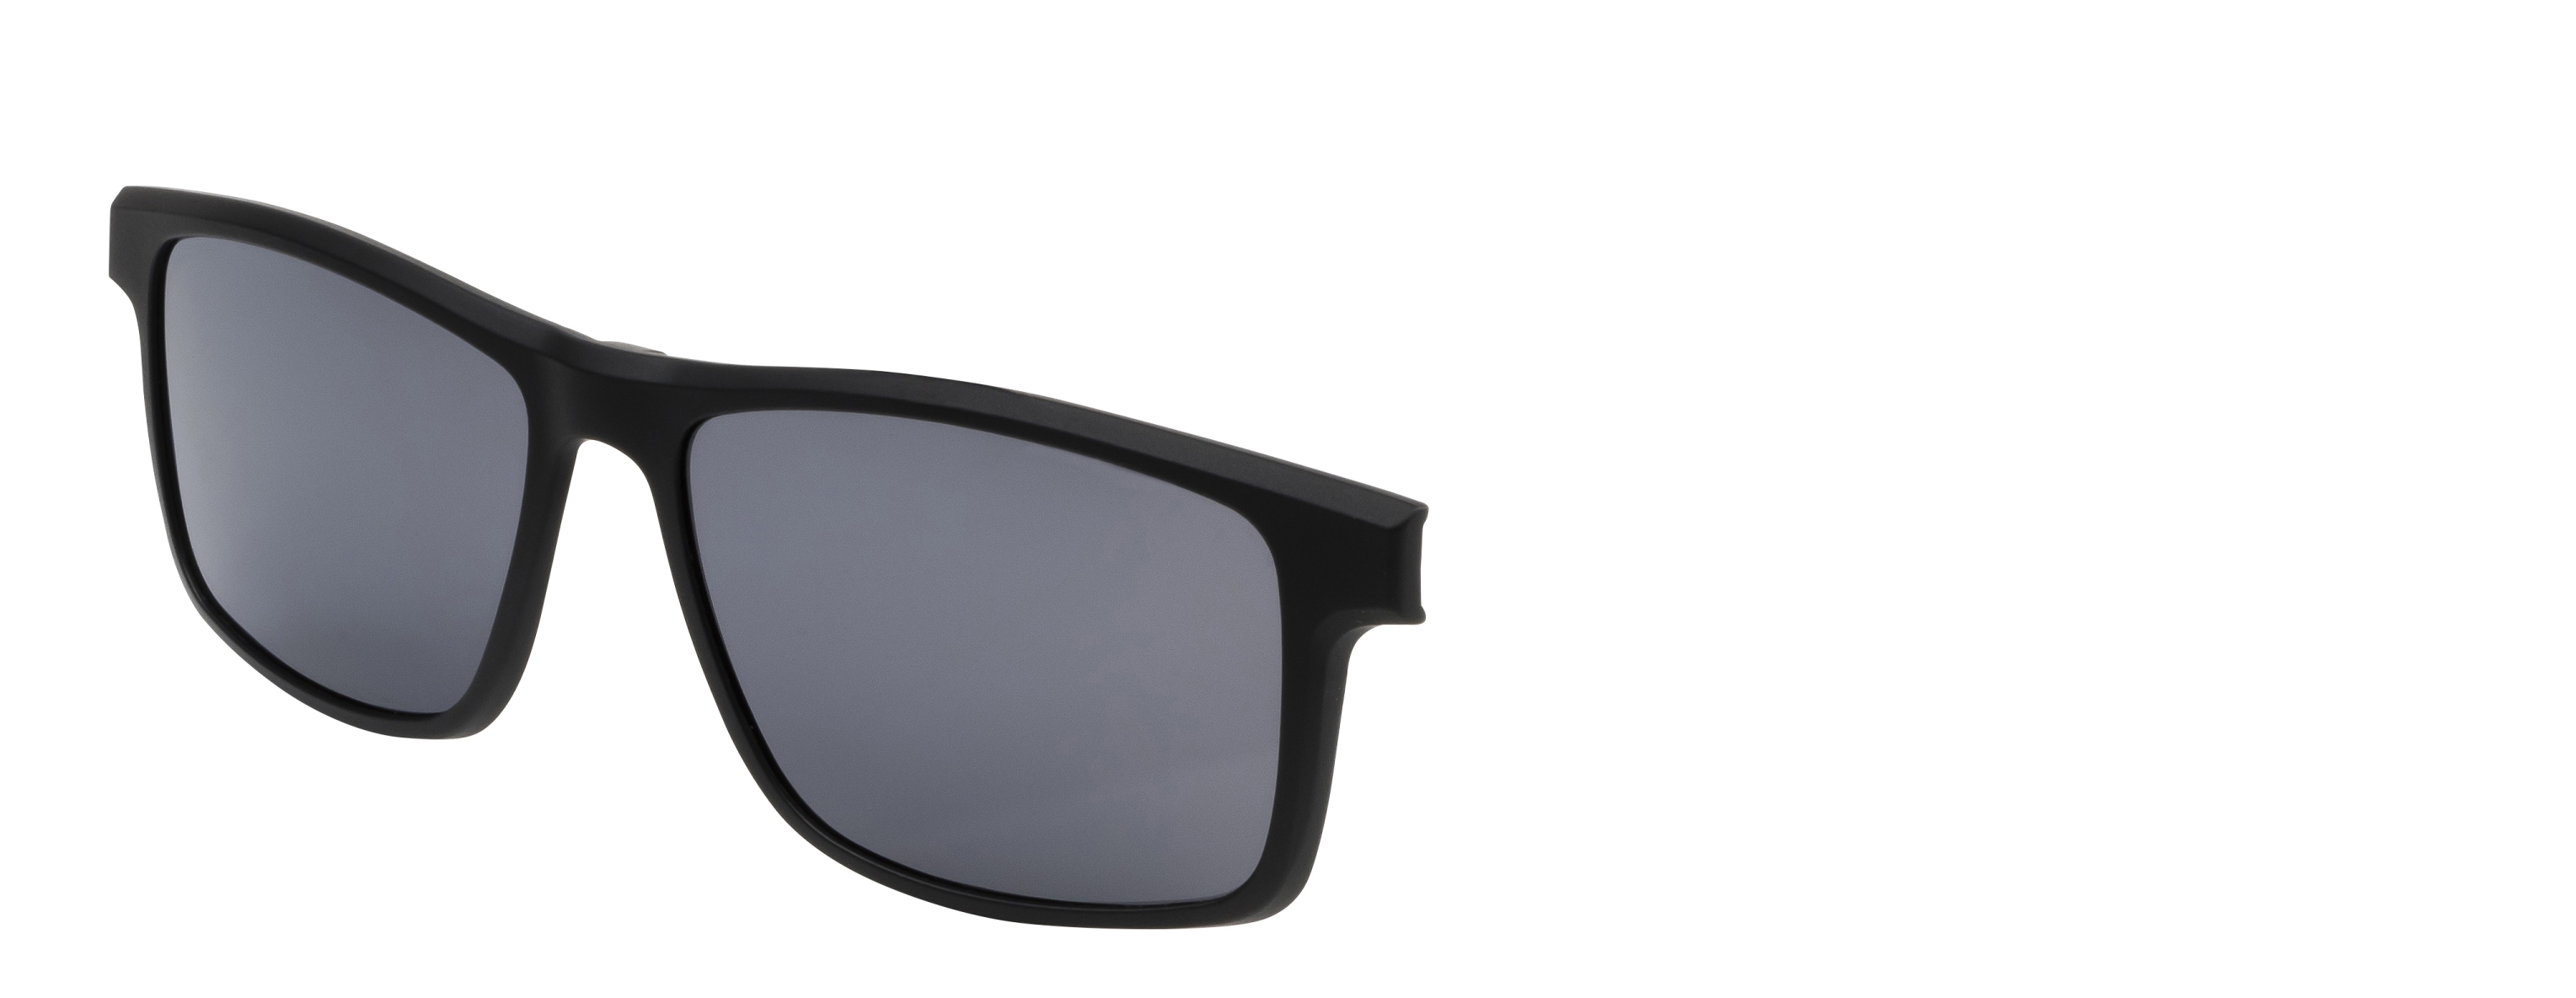 Náhradní dioptrický klip k brýlím Relax  Bern RM135C1clip -